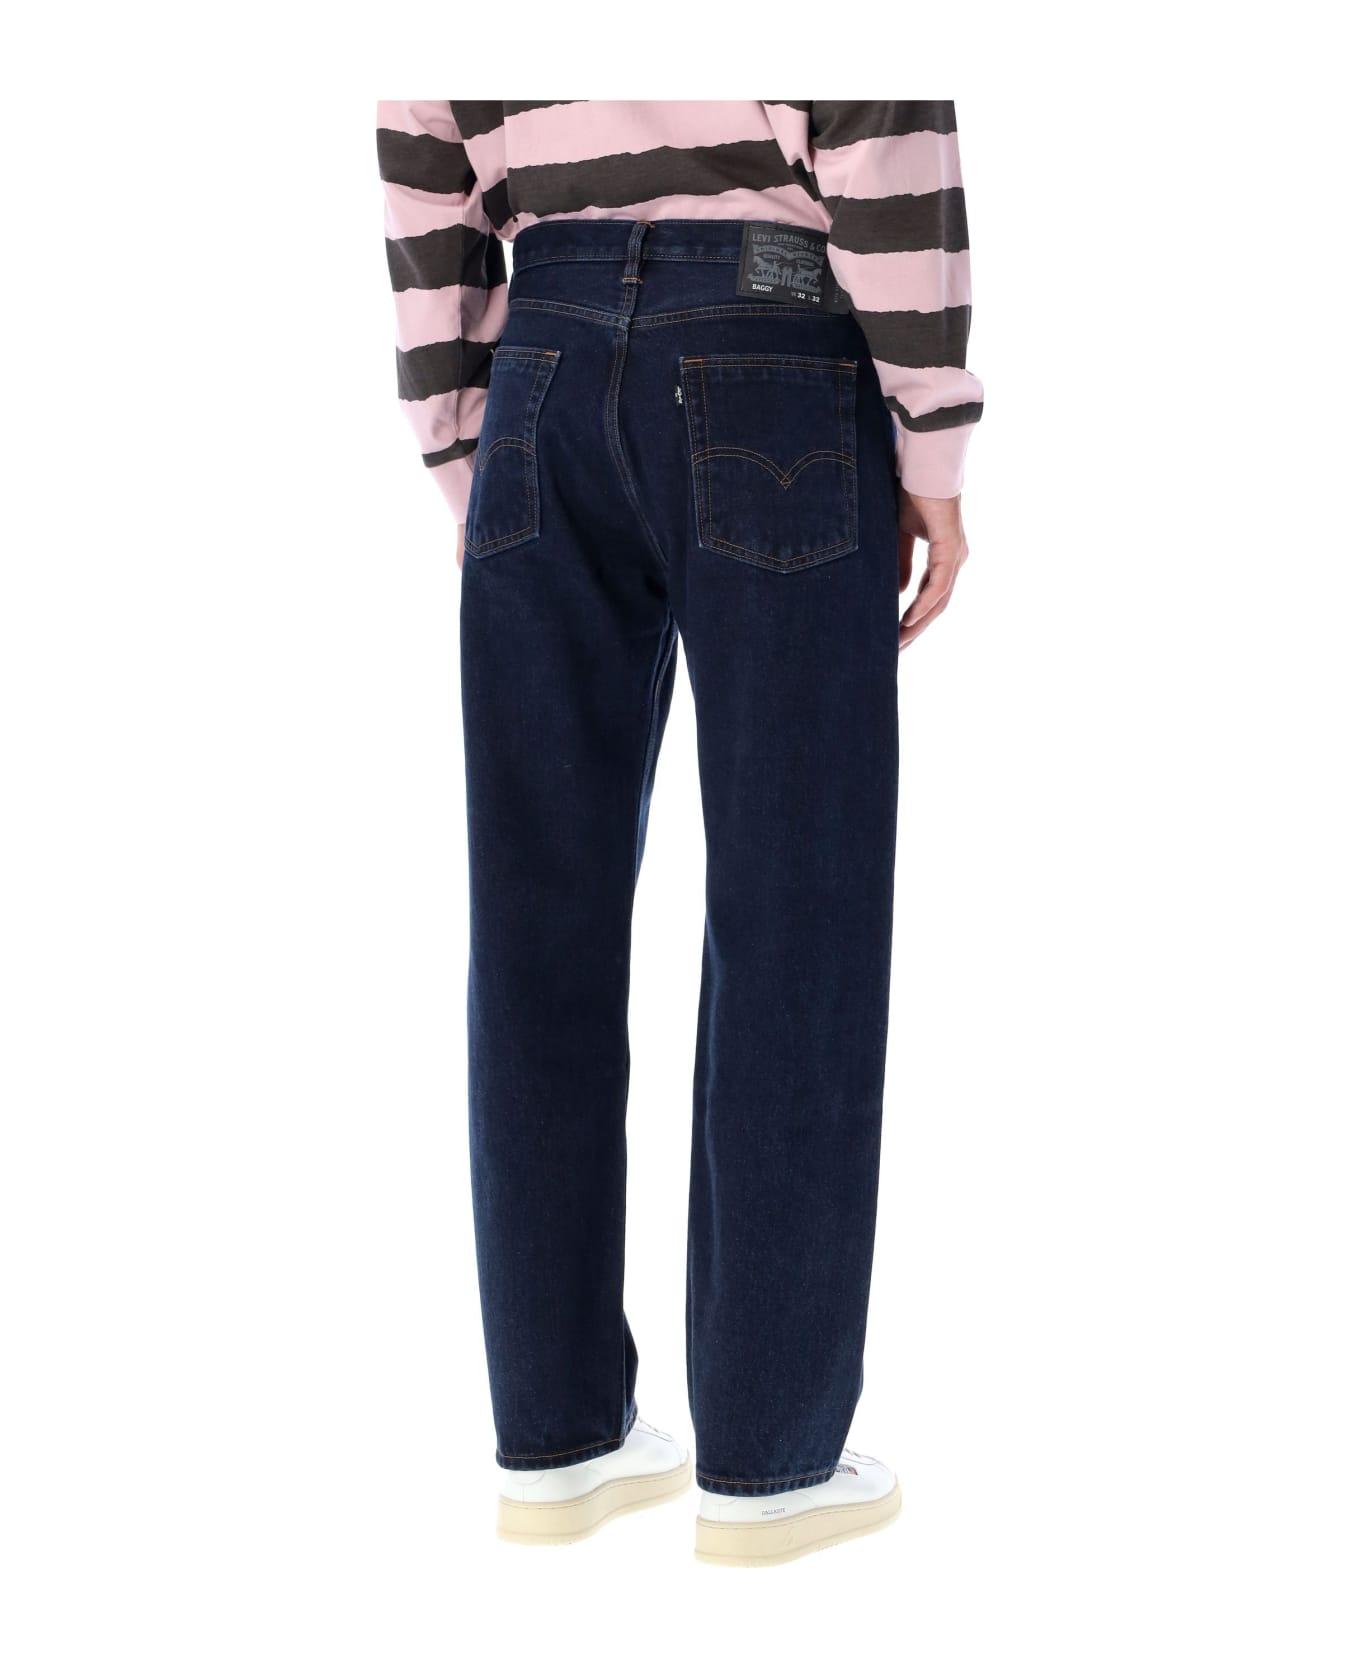 Levi's Cotton Baggy Five Pocket Jeans - DK BLUE デニム